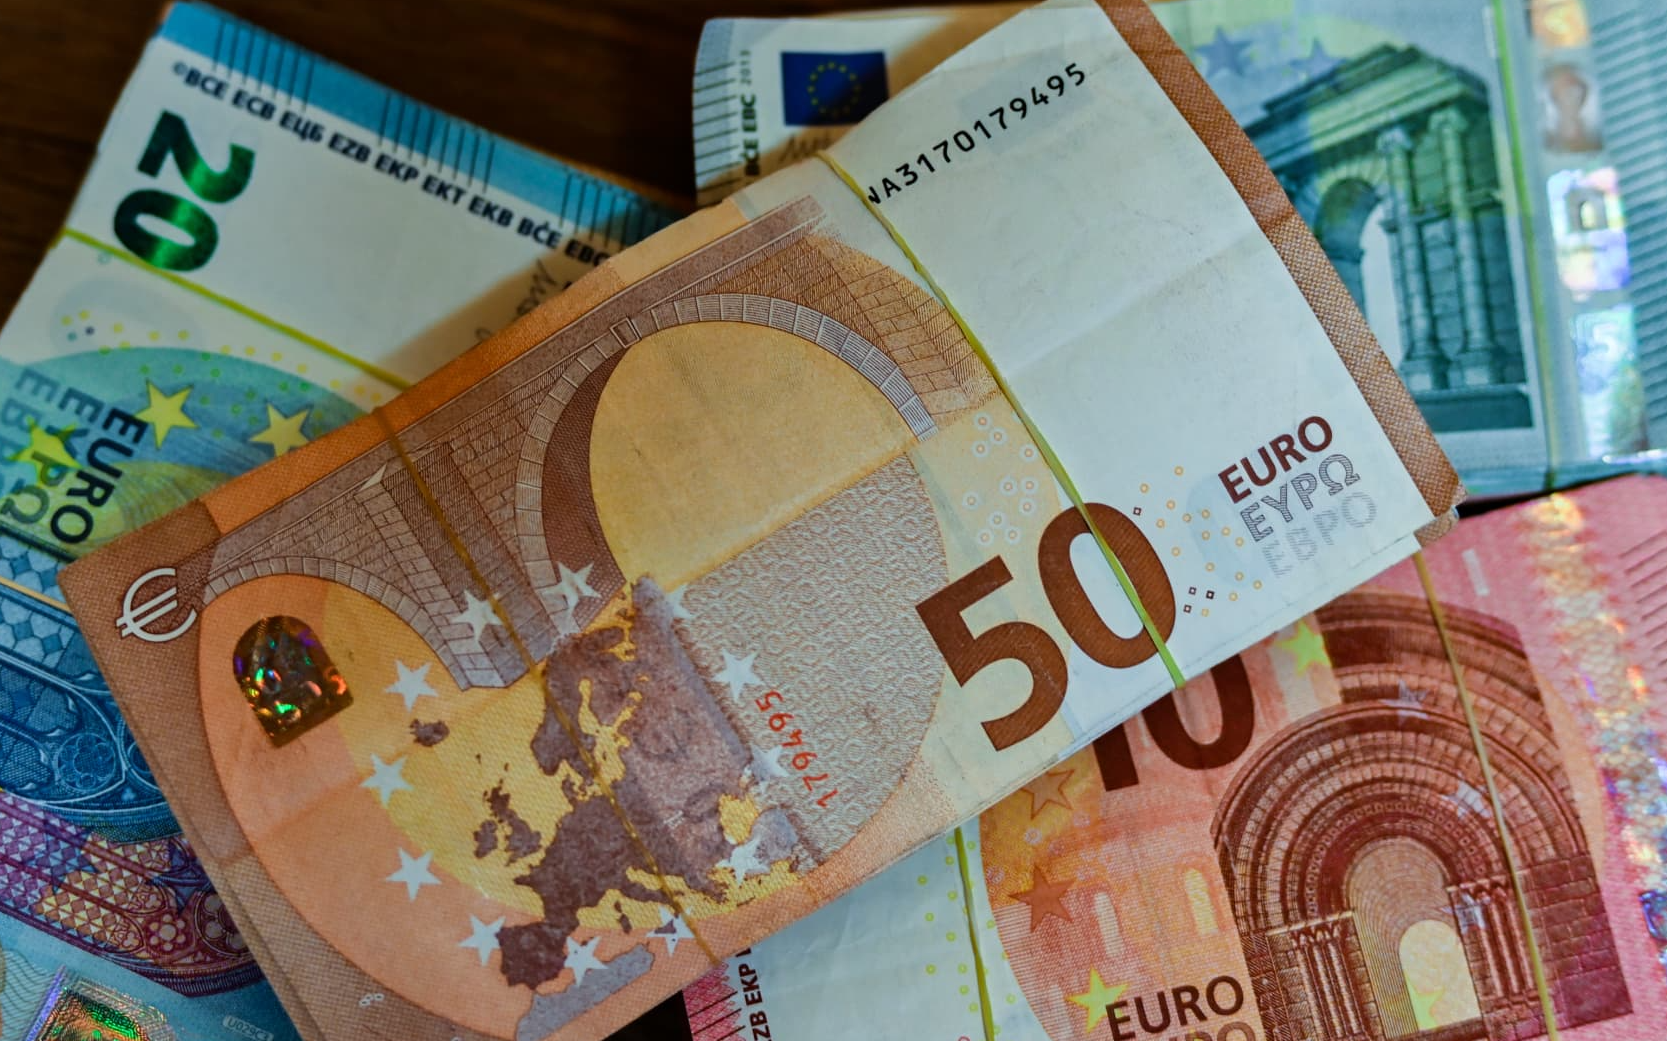 Euro 19 lira sınırını aştı